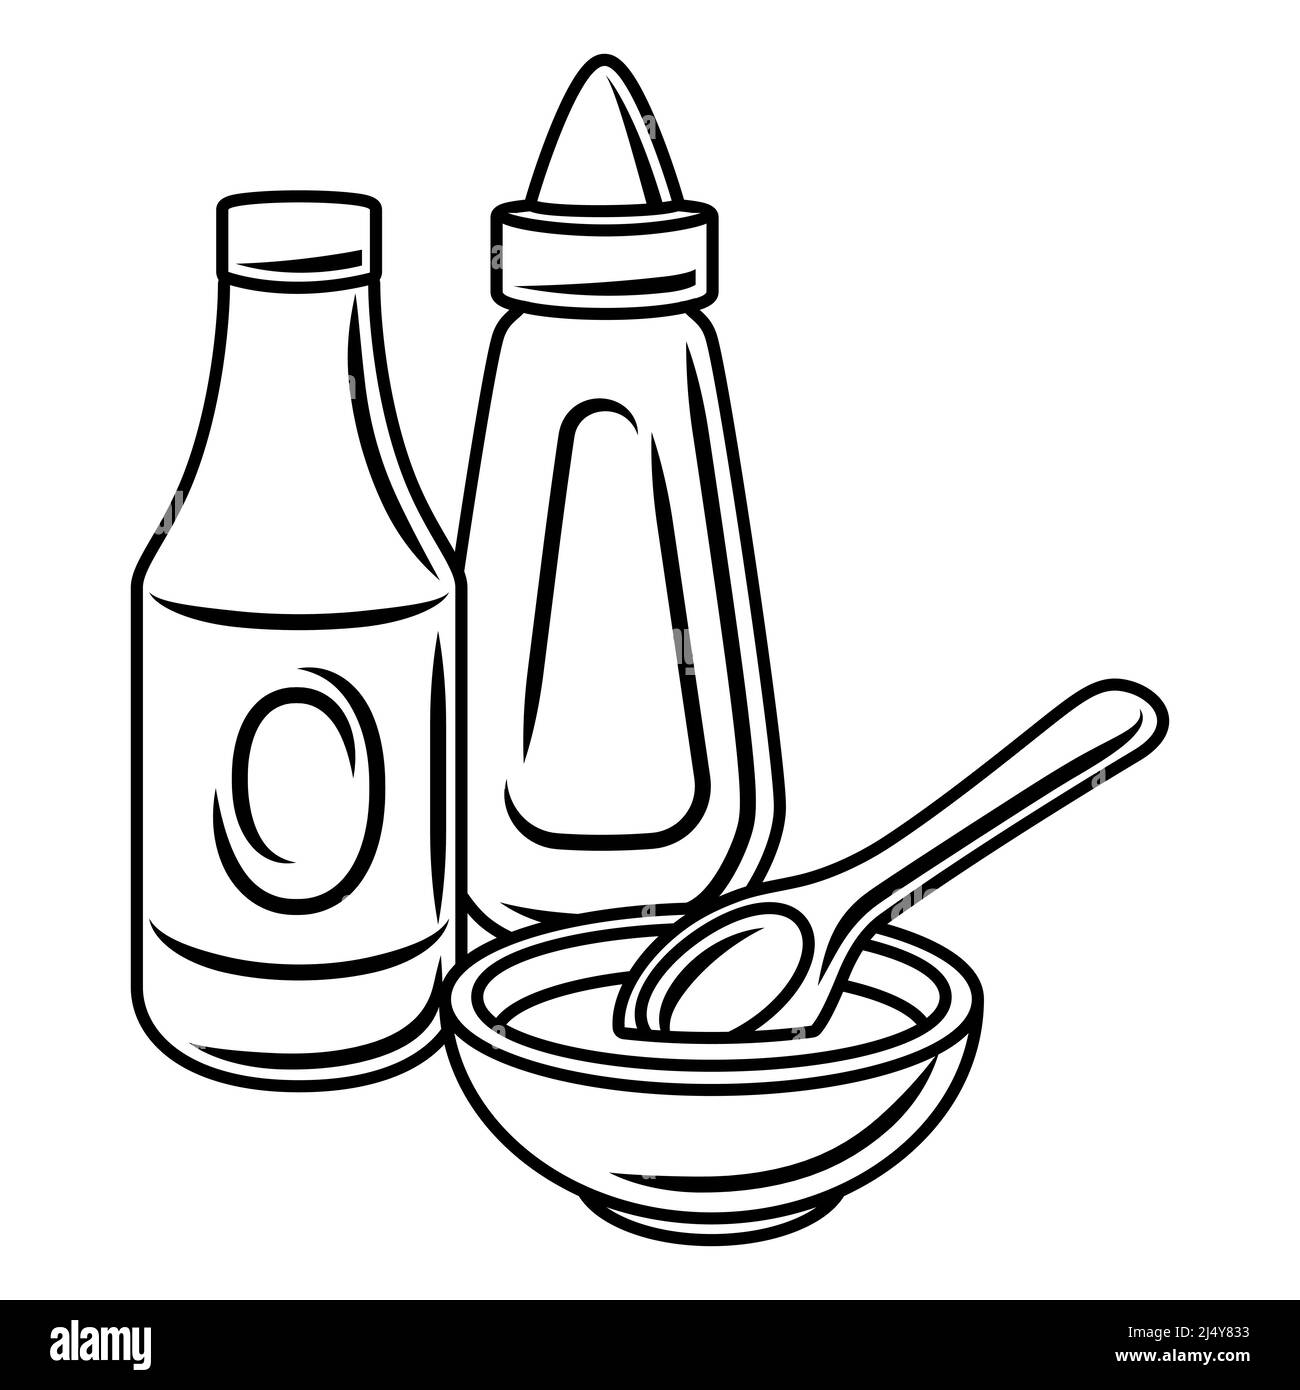 BBQ-Illustration mit Senf- und Ketchup-Saucen. Stilisierte Küche- und Restaurantmenüs. Stock Vektor